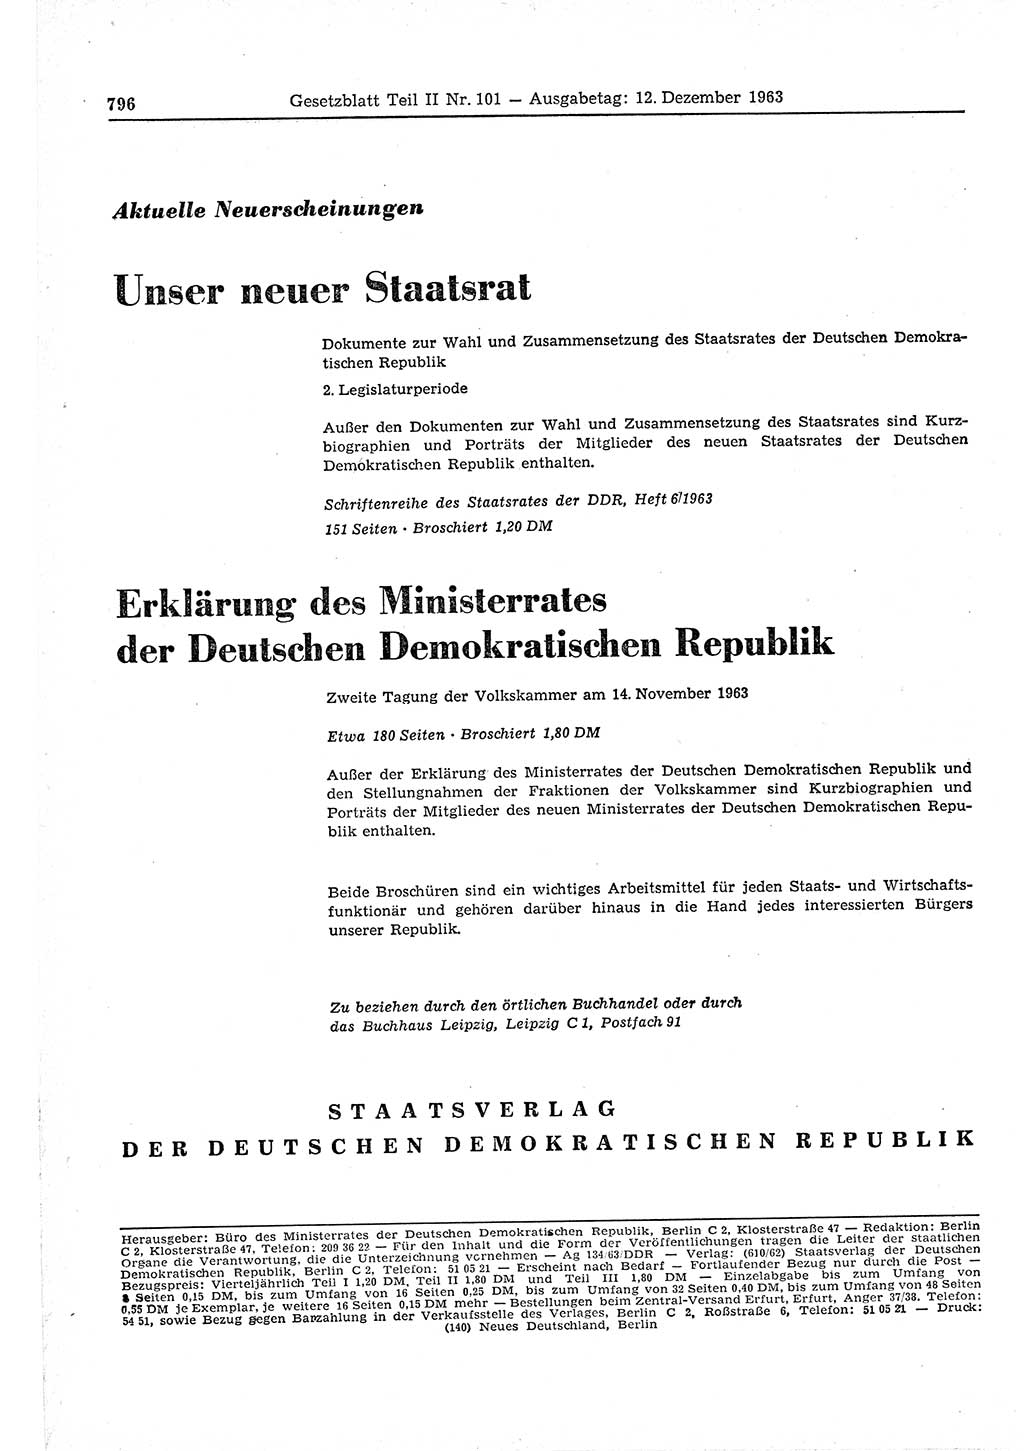 Gesetzblatt (GBl.) der Deutschen Demokratischen Republik (DDR) Teil ⅠⅠ 1963, Seite 796 (GBl. DDR ⅠⅠ 1963, S. 796)